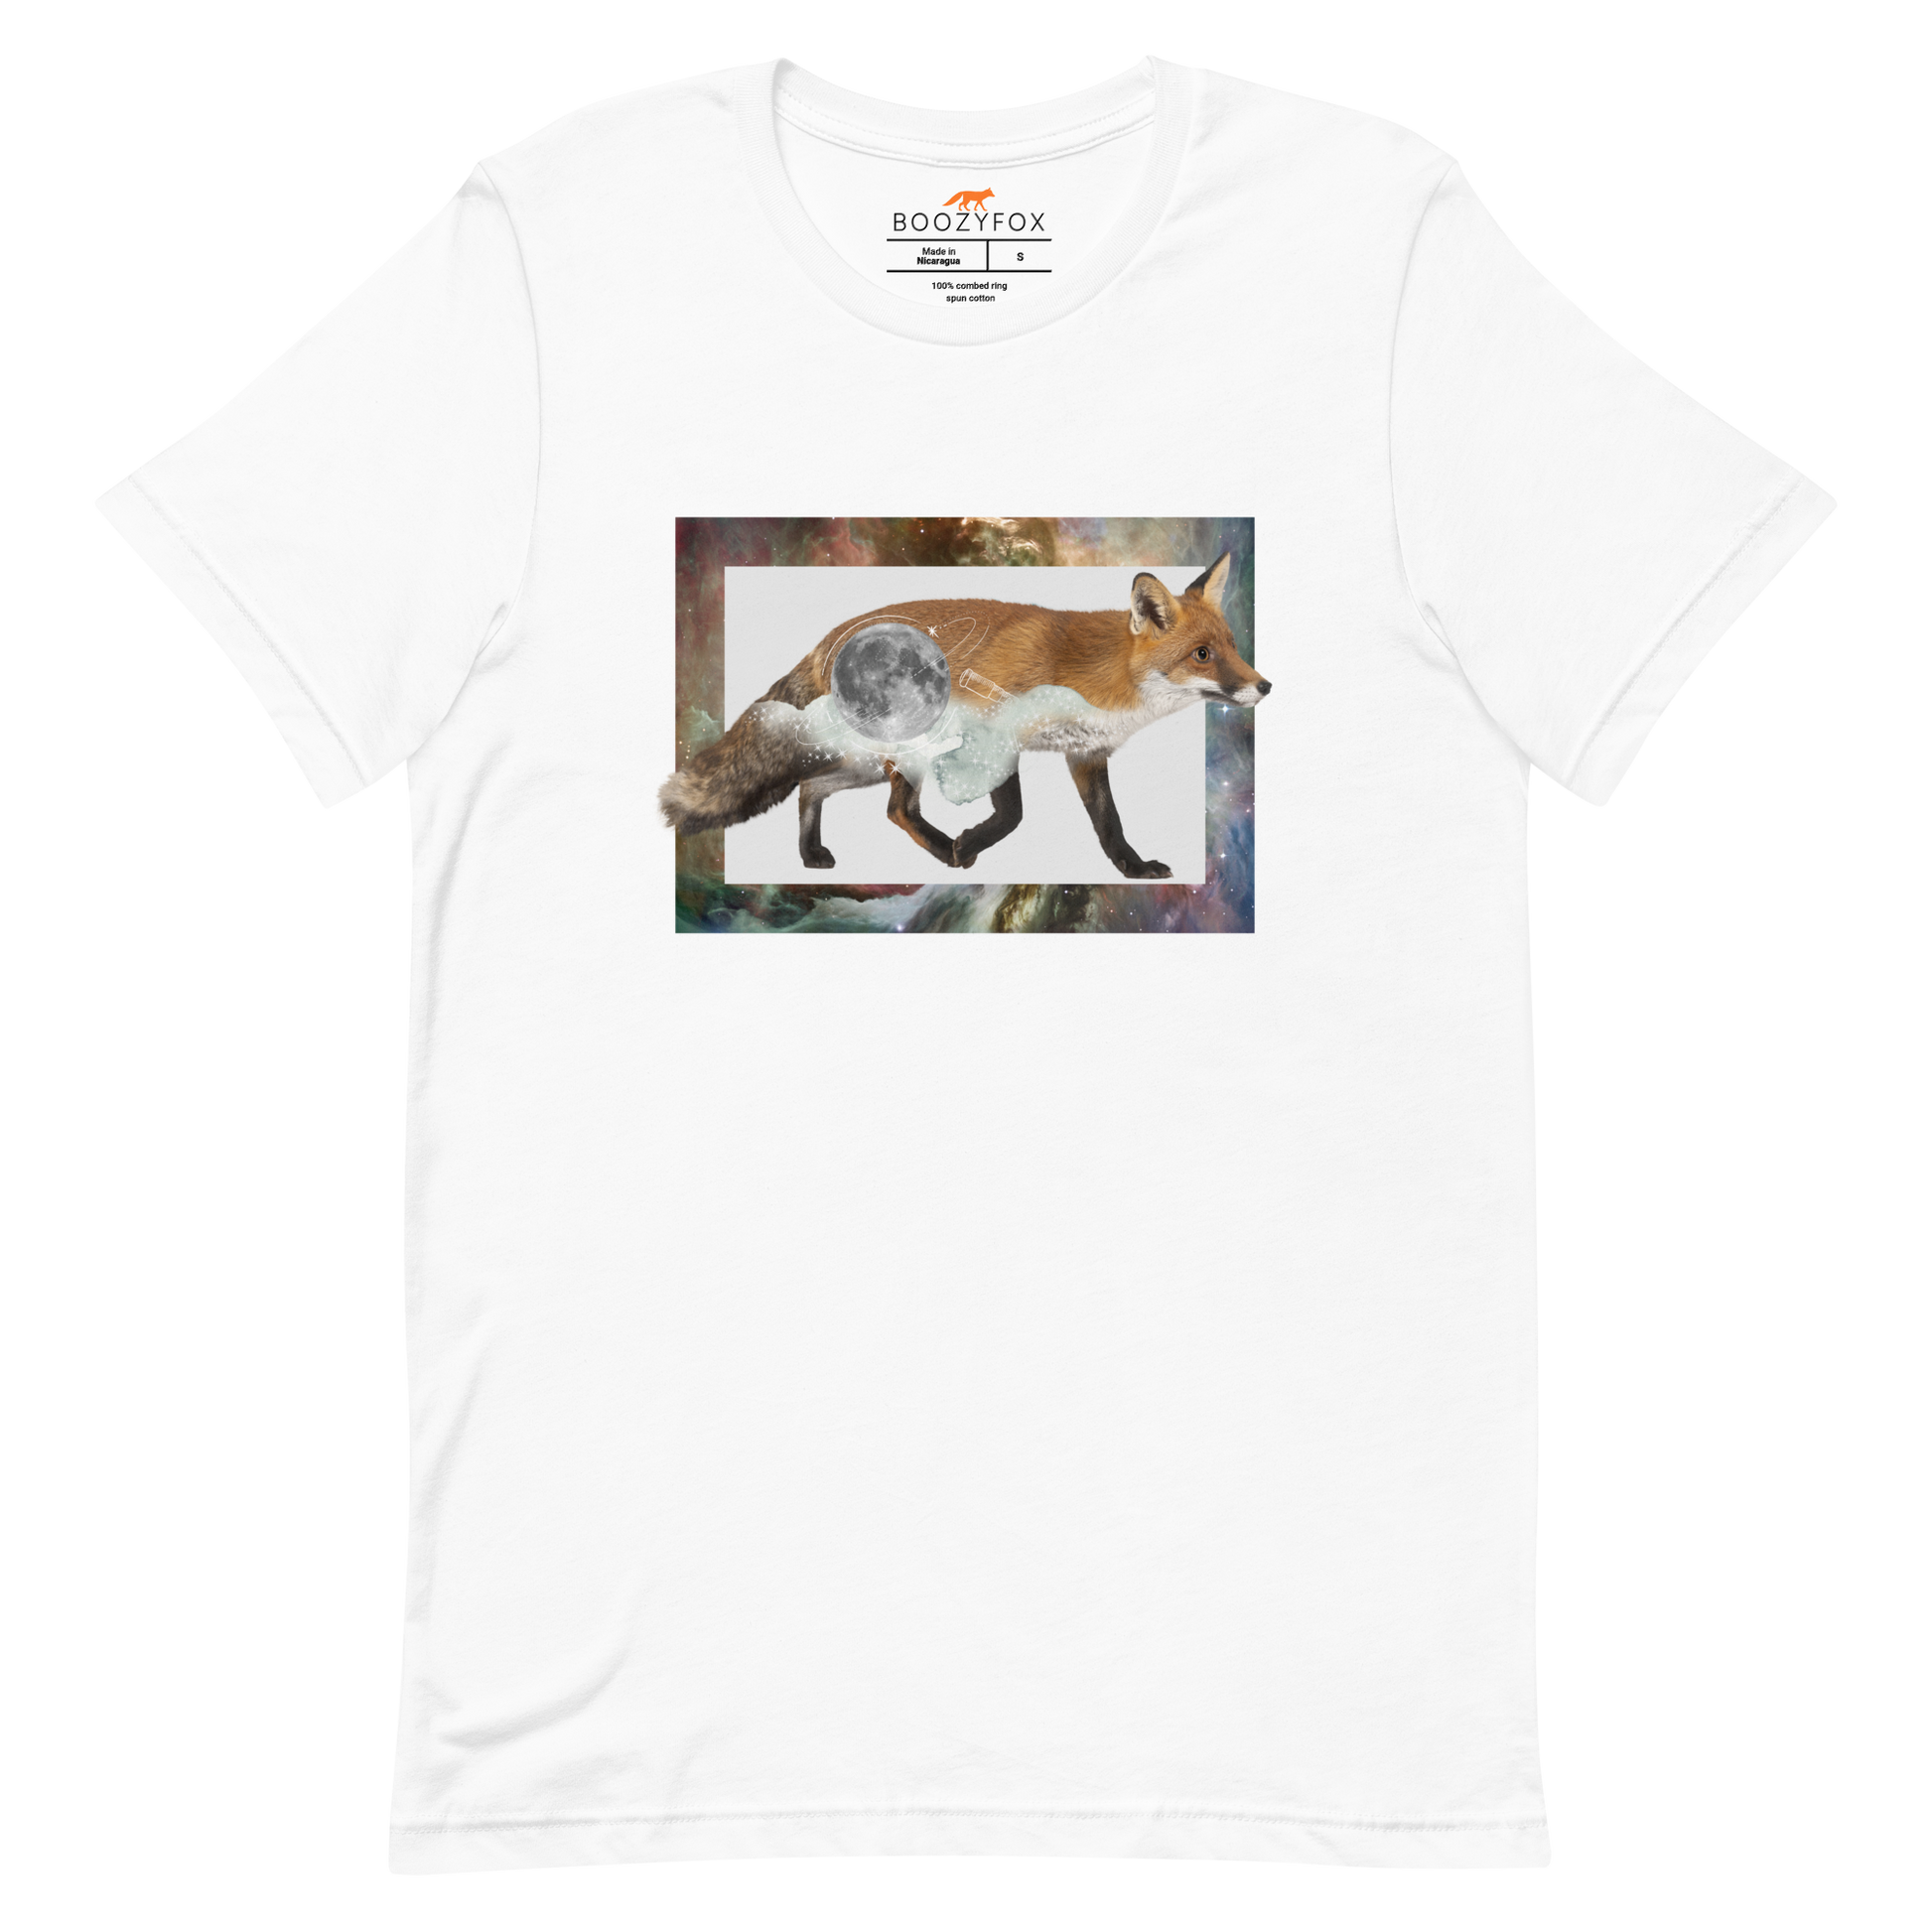 White Premium Fox T-Shirt featuring a stellar Space Fox graphic on the chest - Cool Graphic Fox Tees - Boozy Fox